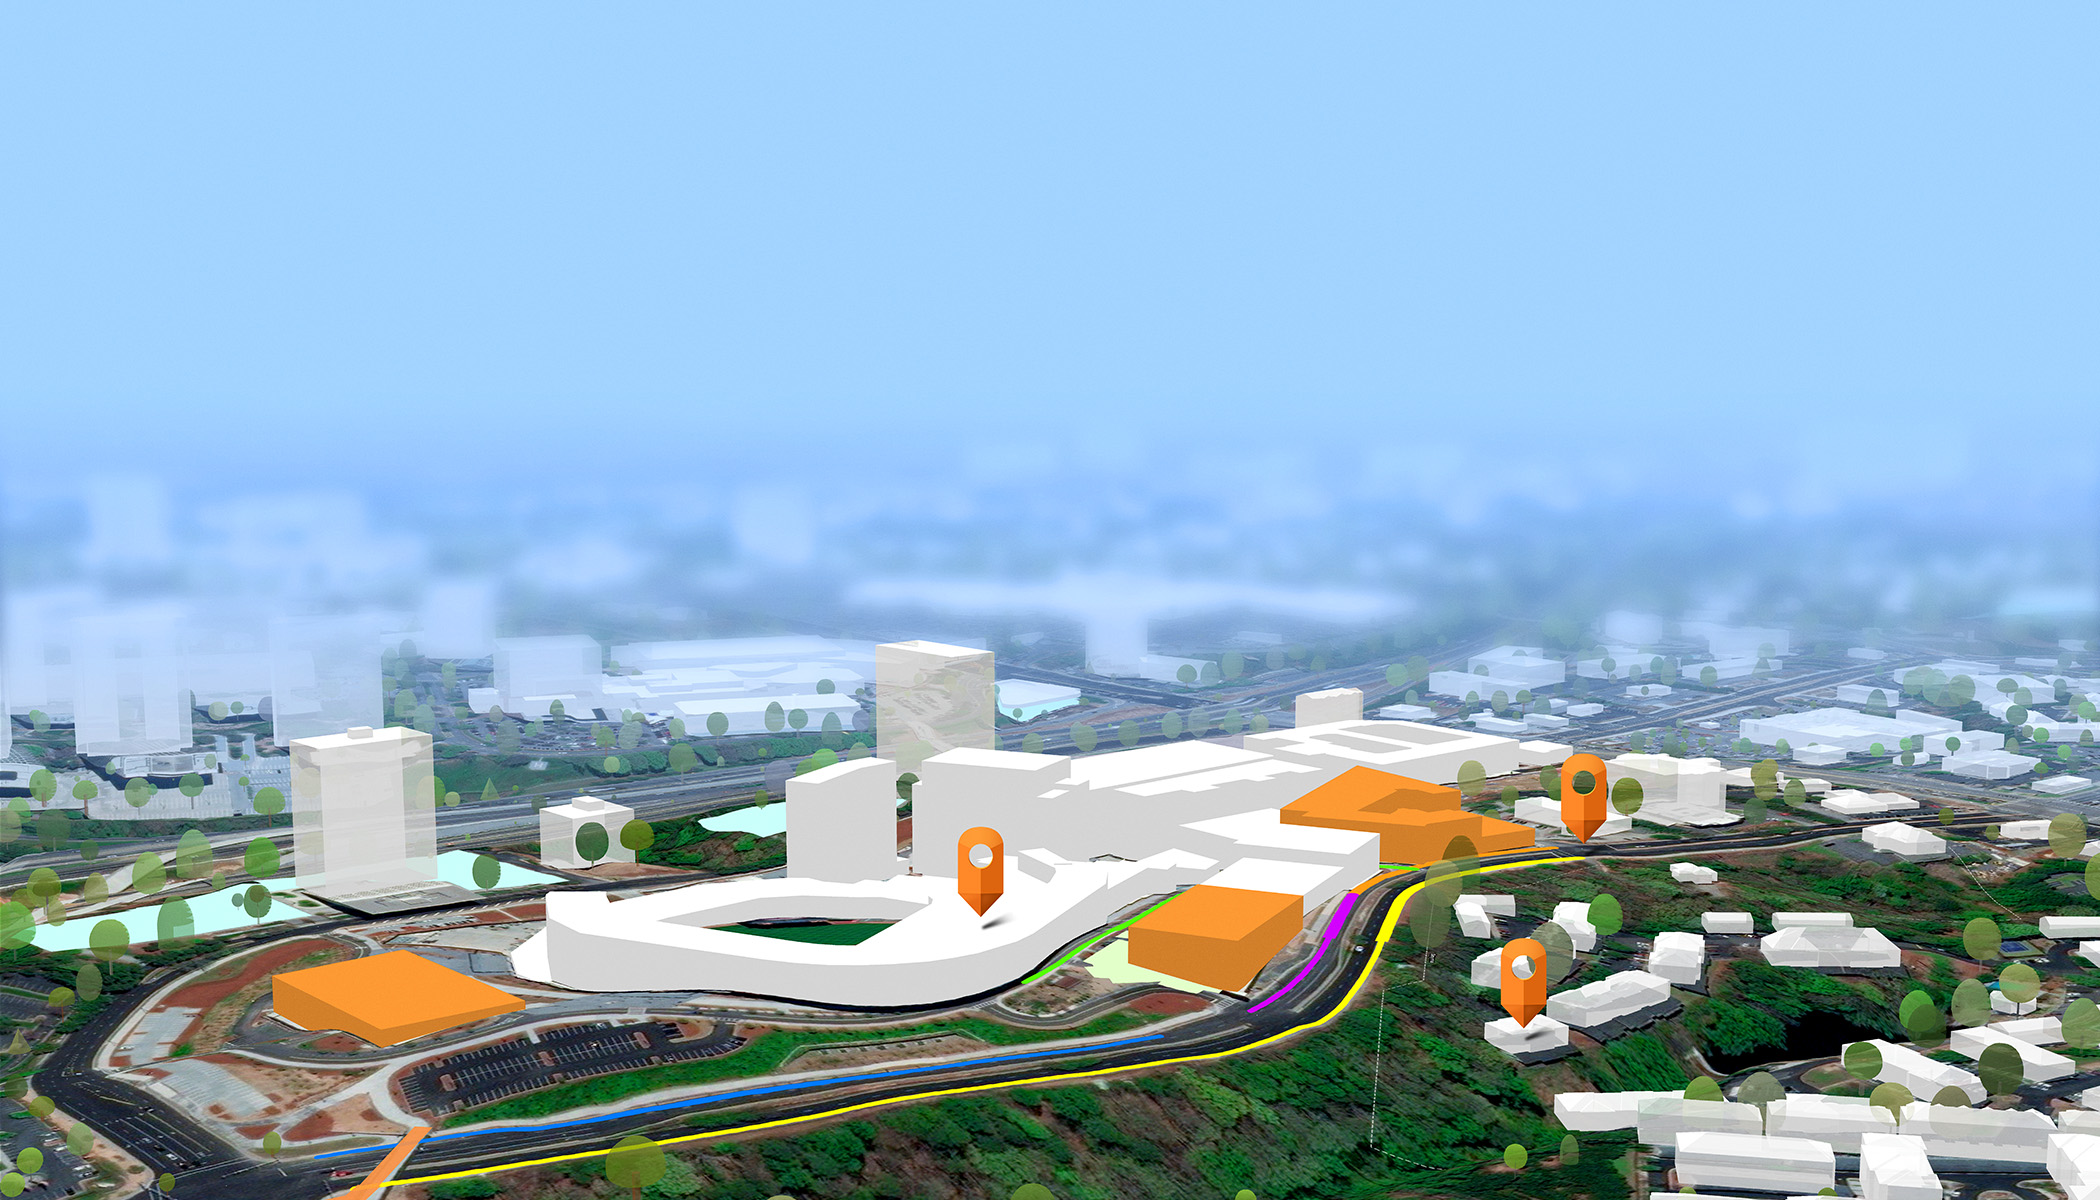 Diseño en 3D de una ciudad con el fondo desenfocado y el primer plano con edificios blancos y naranjas y tres iconos naranjas de navegación